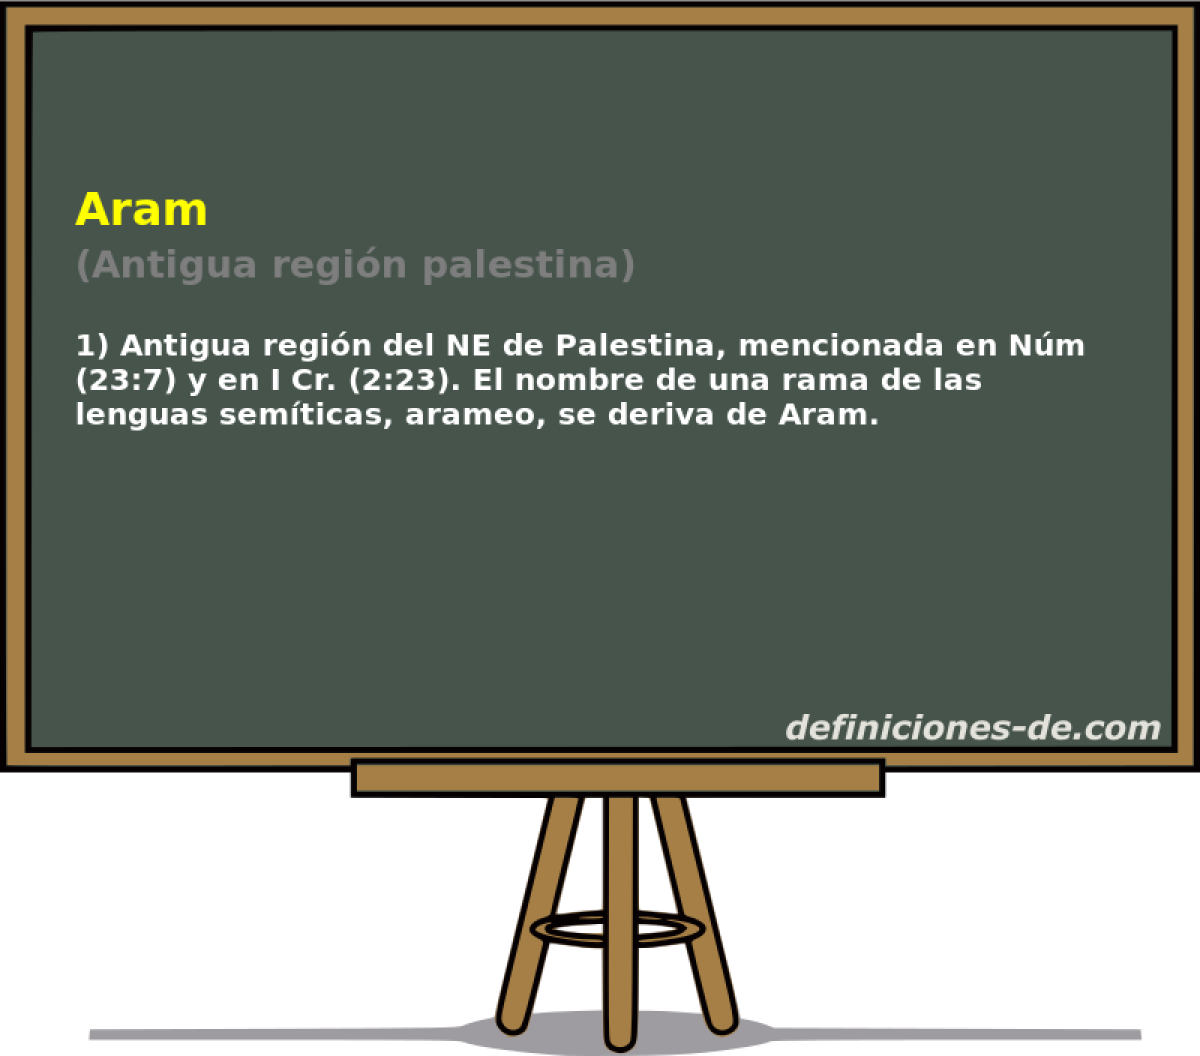 Aram (Antigua regin palestina)